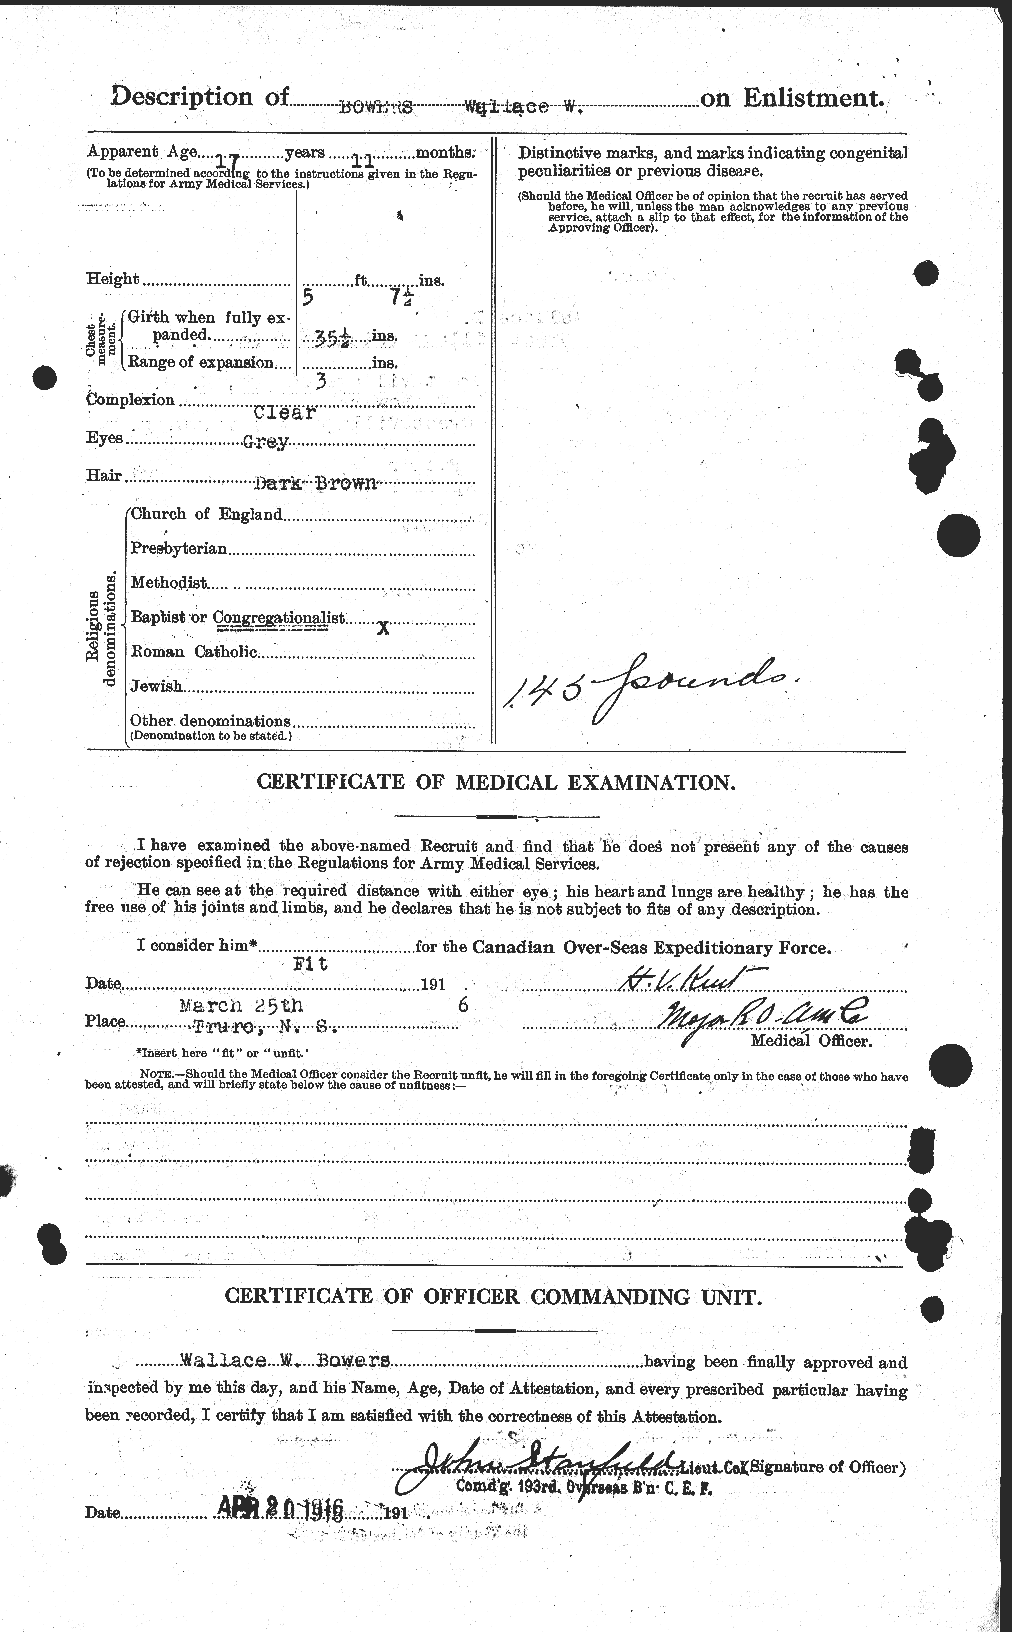 Dossiers du Personnel de la Première Guerre mondiale - CEC 253582b